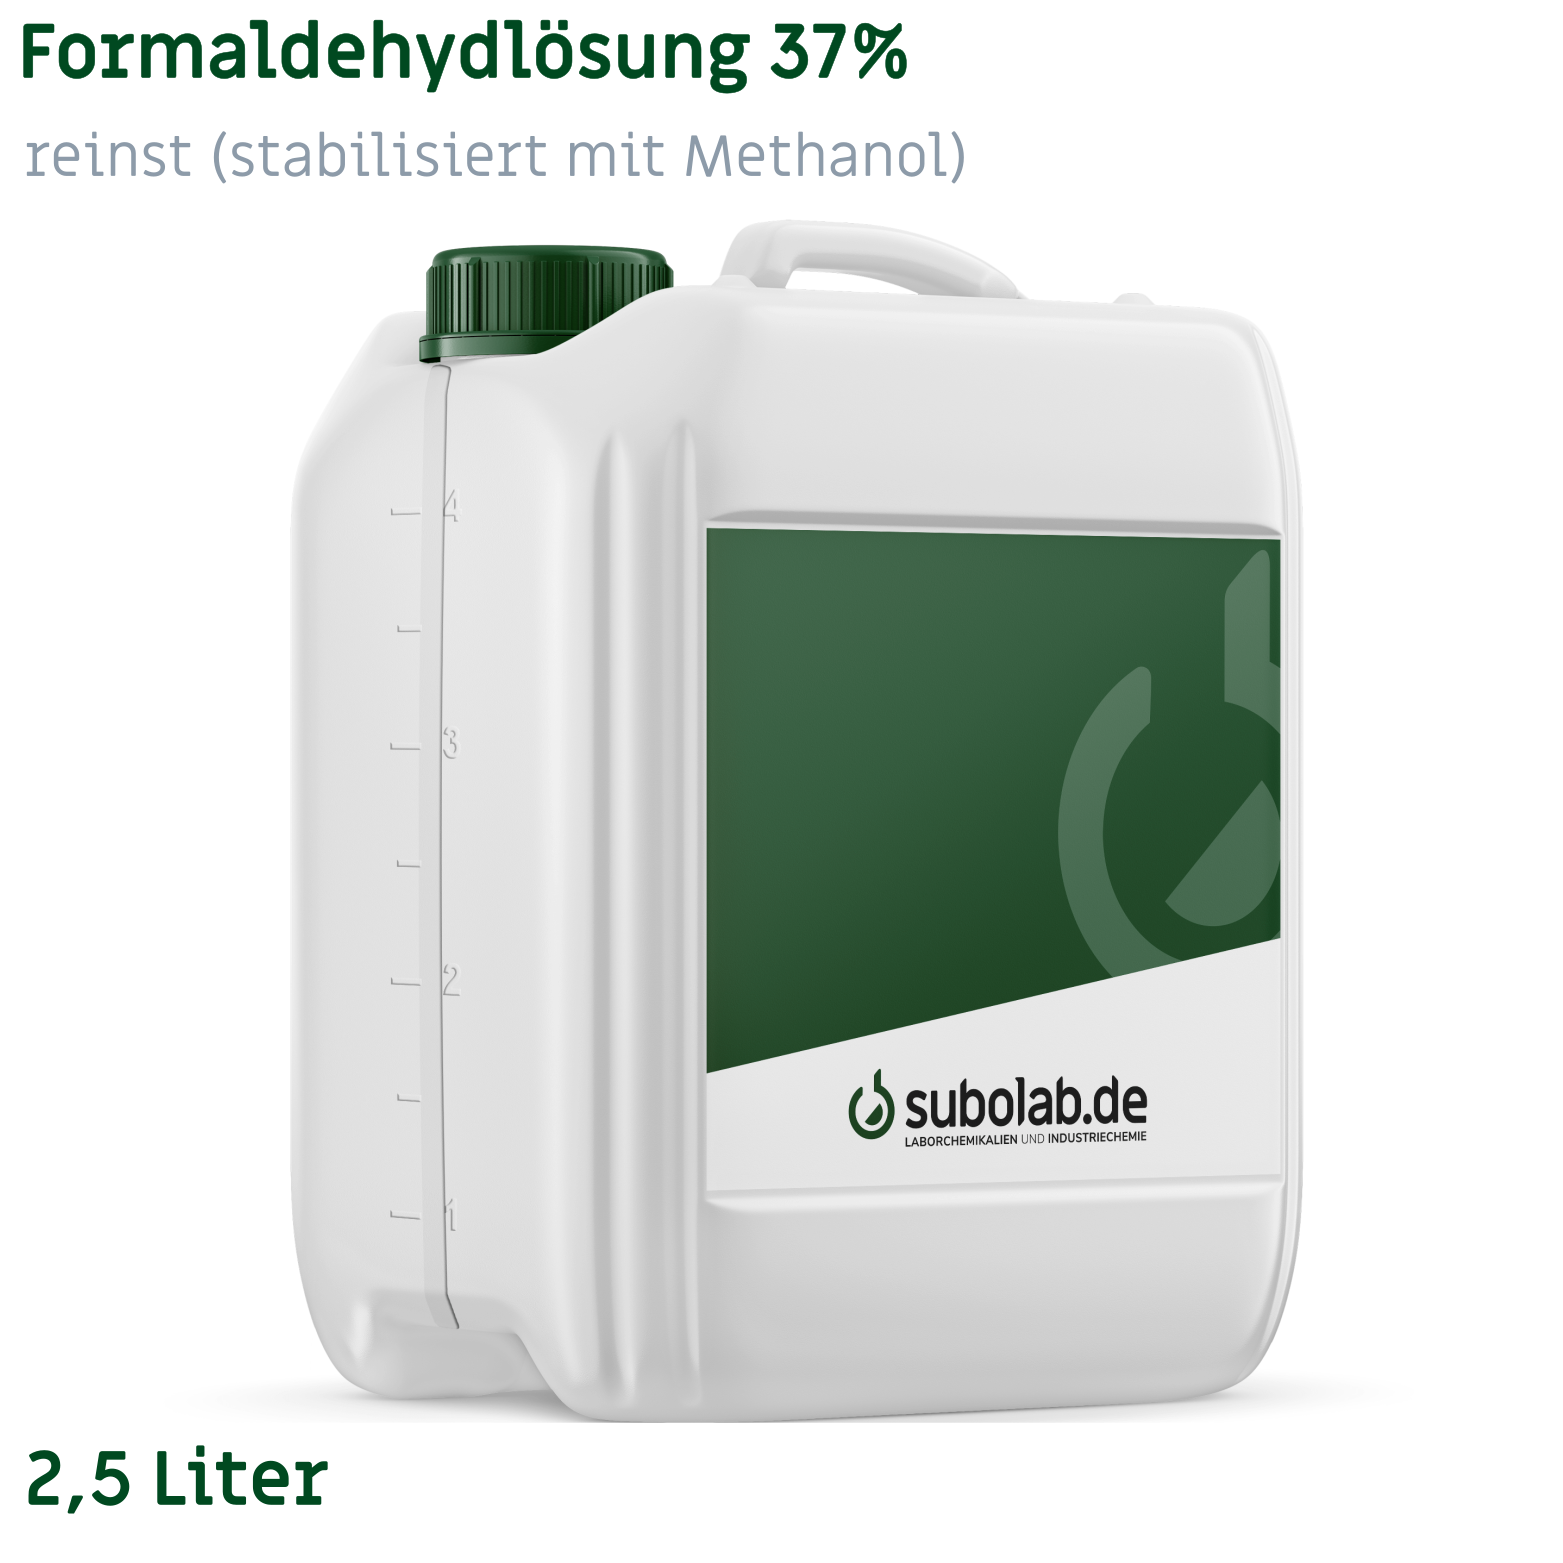 Bild von Formaldehydlösung 37% reinst (stabilisiert mit Methanol) (2,5 Liter)